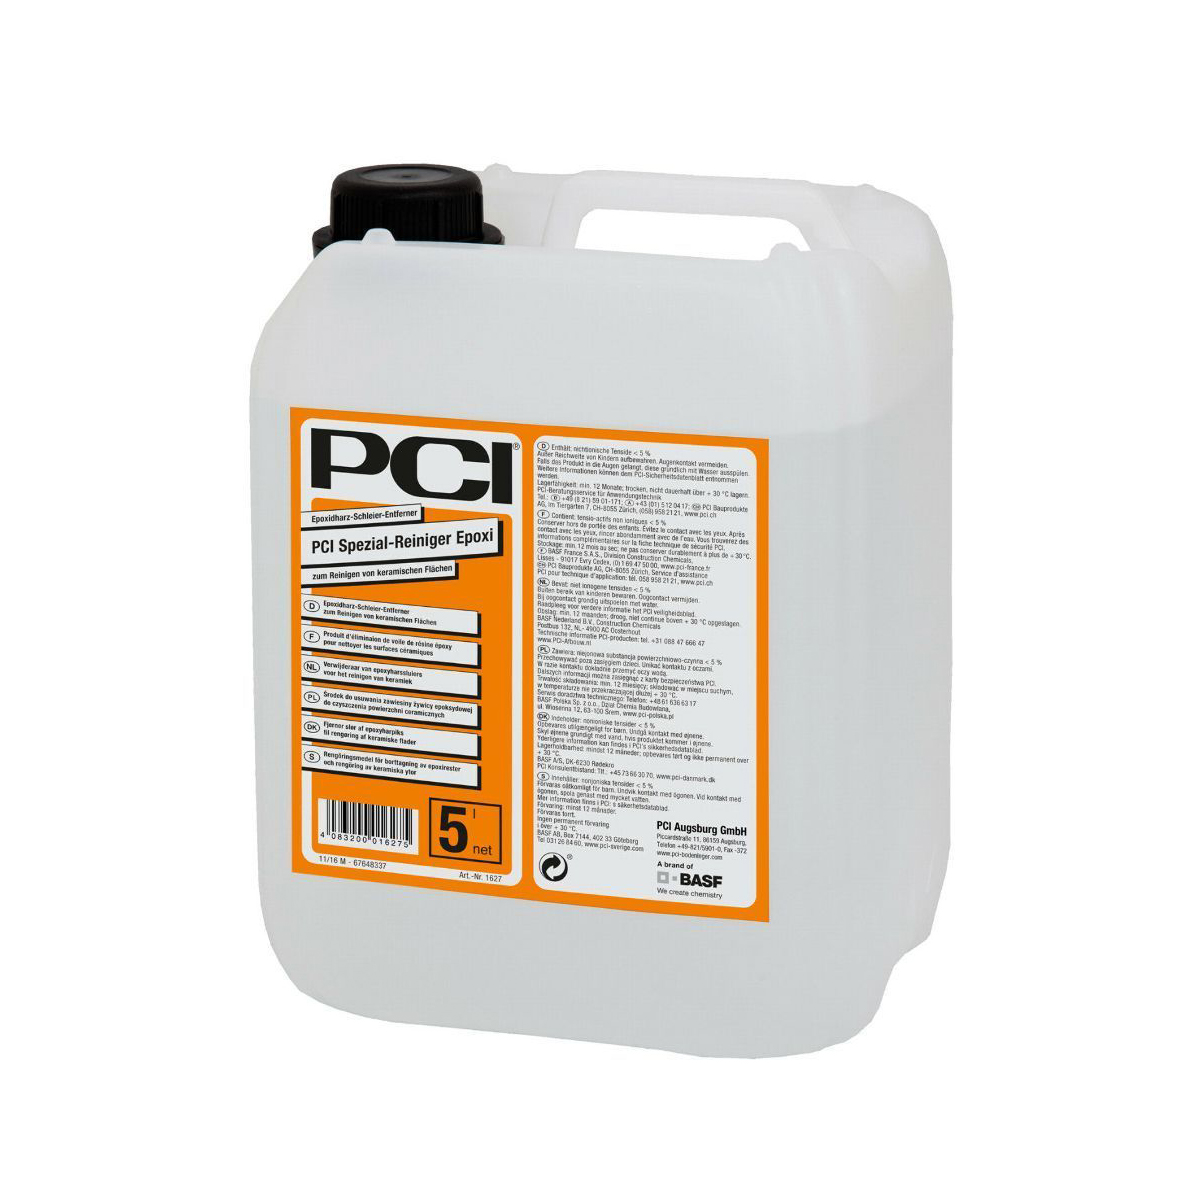 PCI Spezial-Reiniger Epoxi Reinigen von Epoxidharzschleiern auf keramischen Flächen